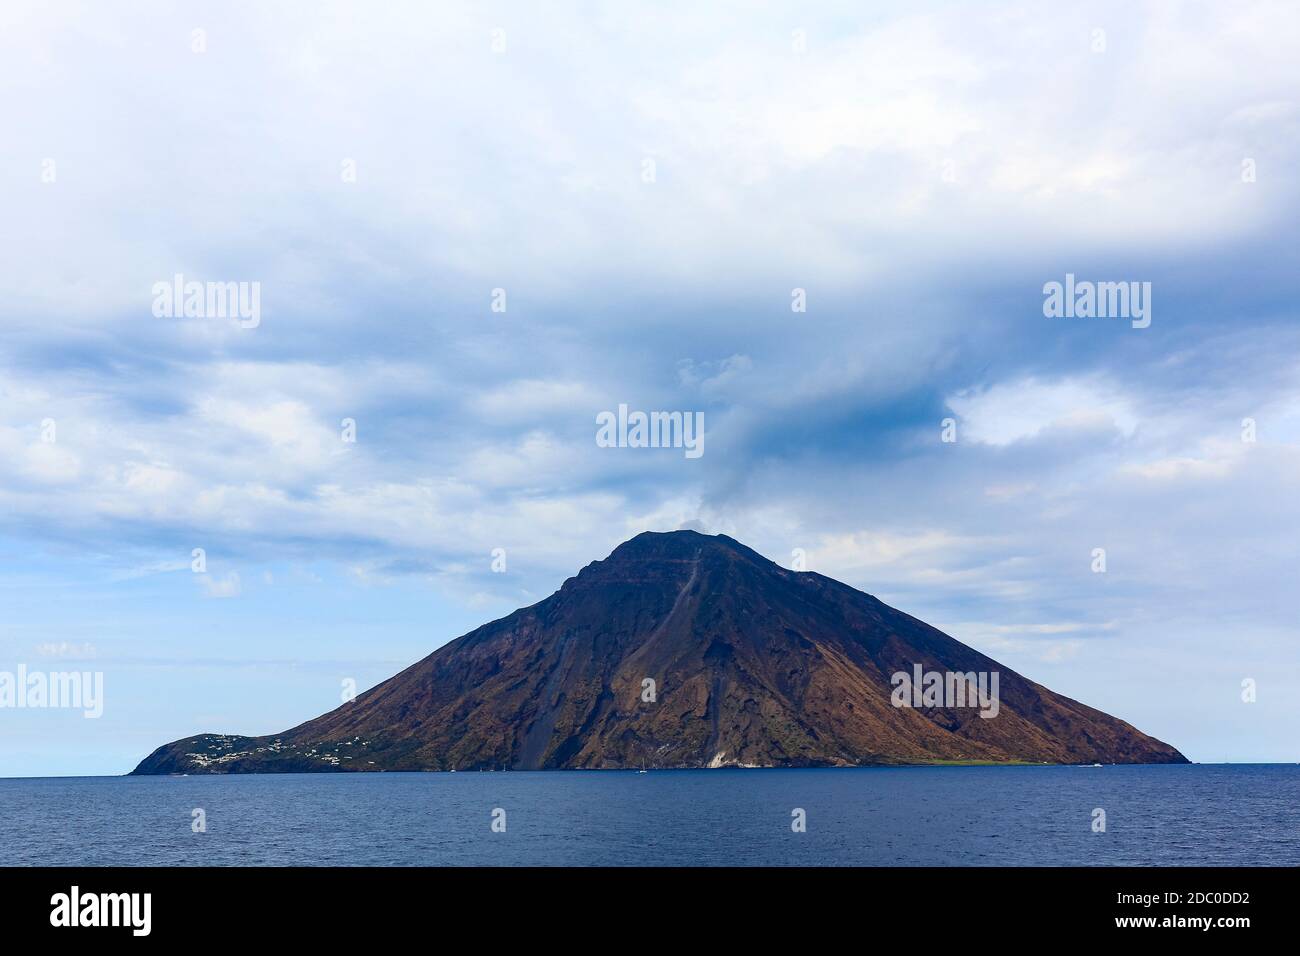 Sicile, Italie. L'île volcanique de Stromboli s'élève de la mer Tyrrhénienne. Banque D'Images